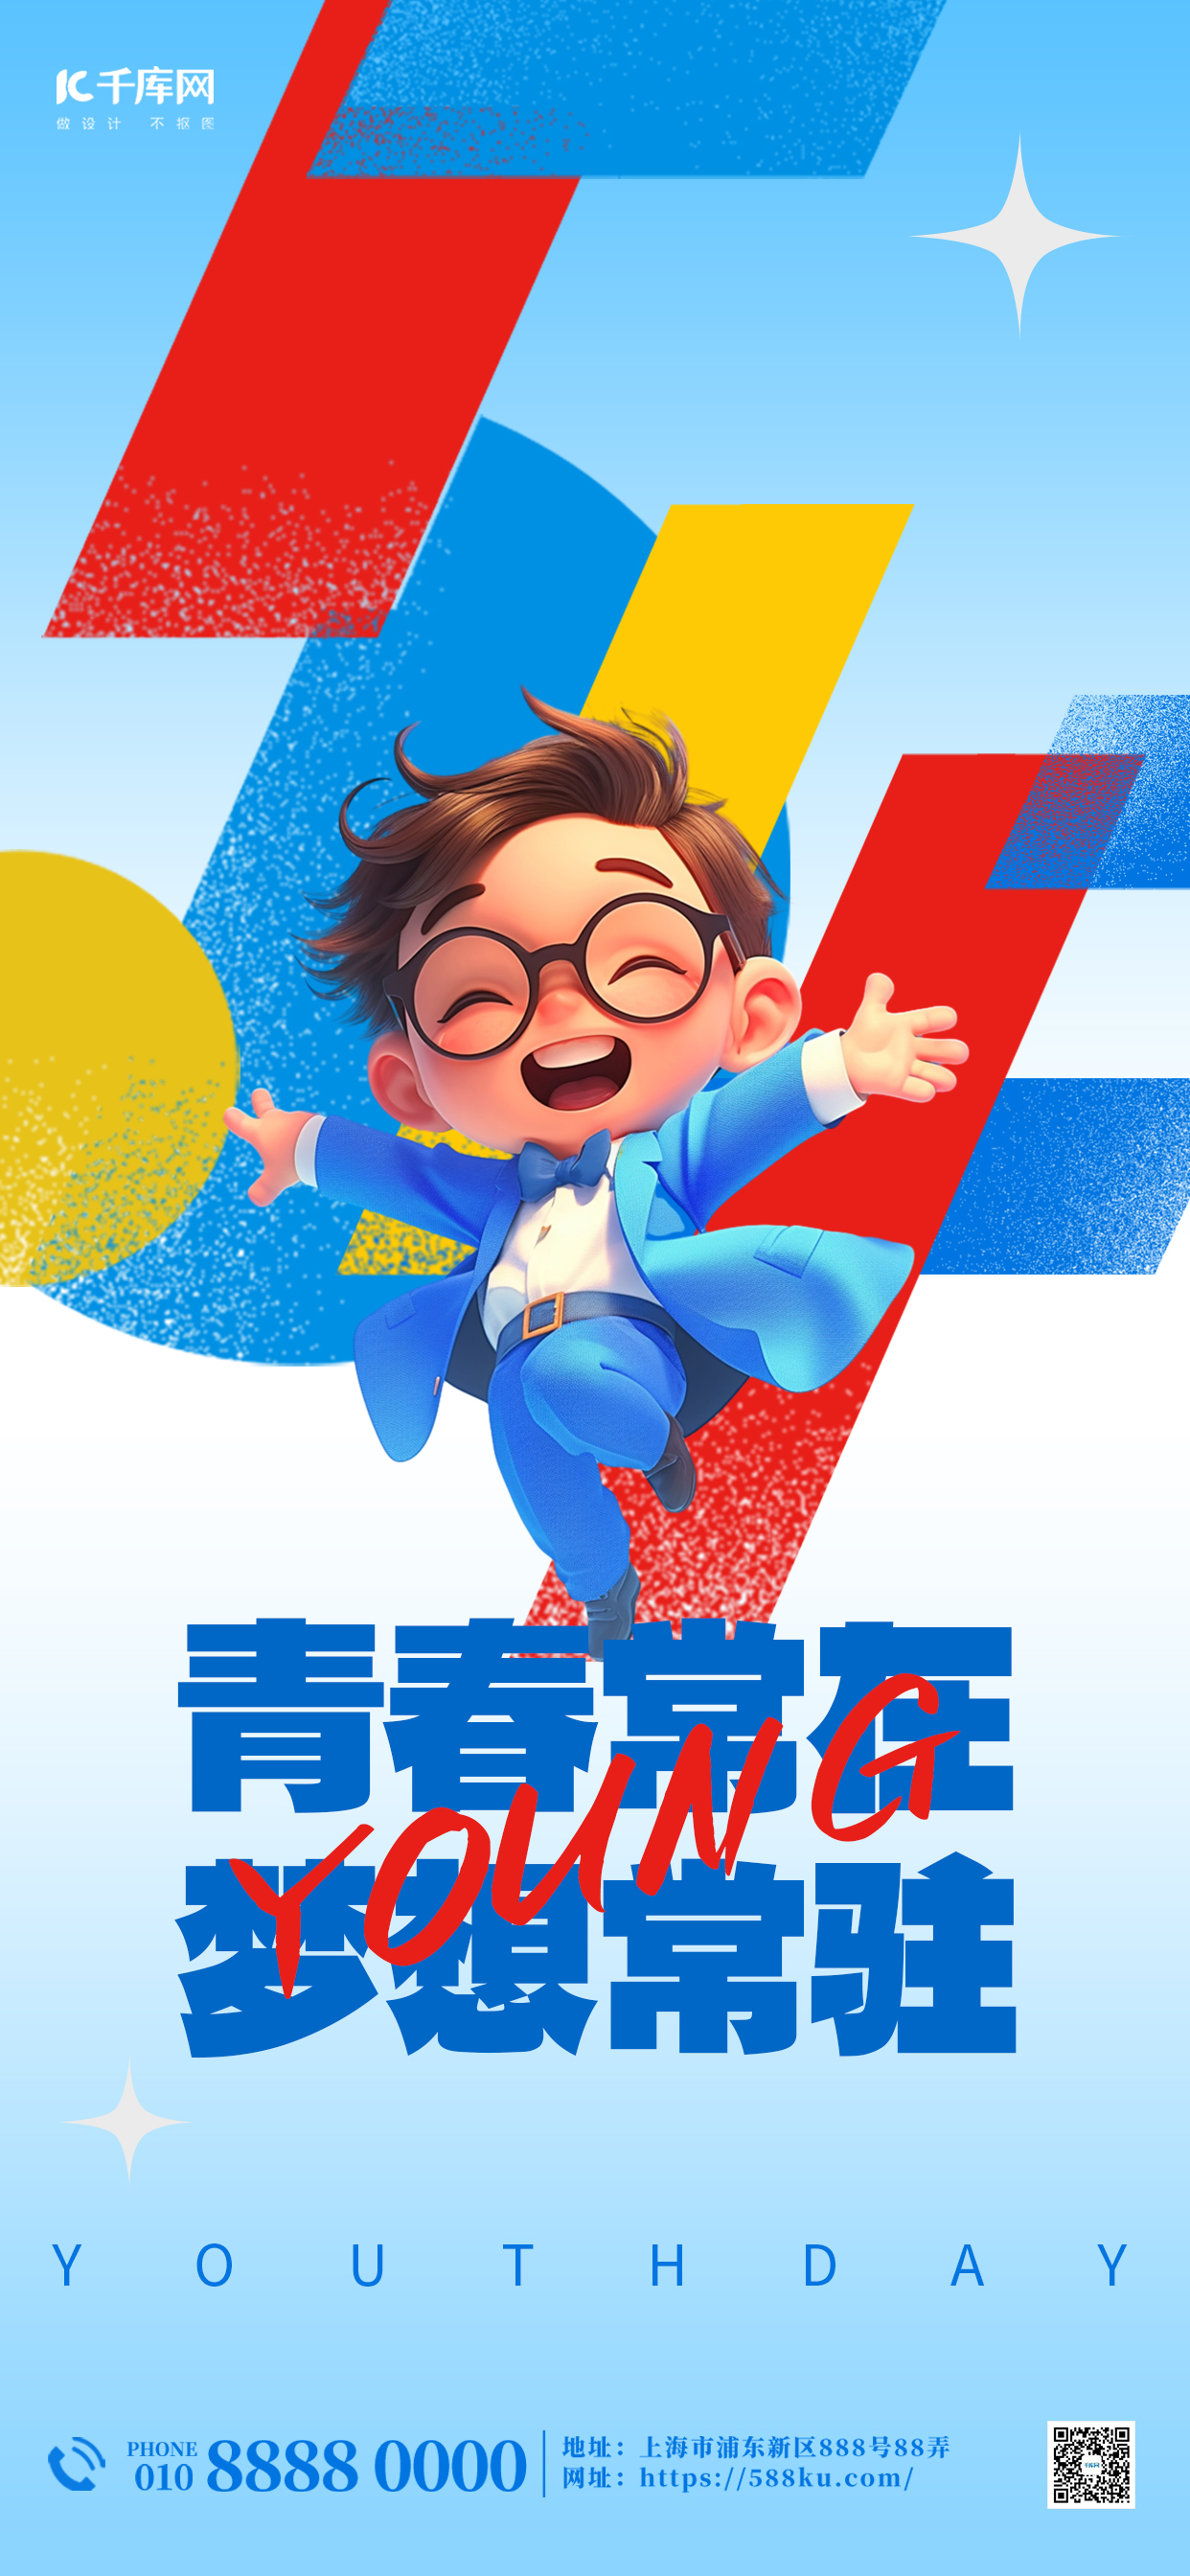 青年节节日贺卡蓝色创意简约宣传海报图片